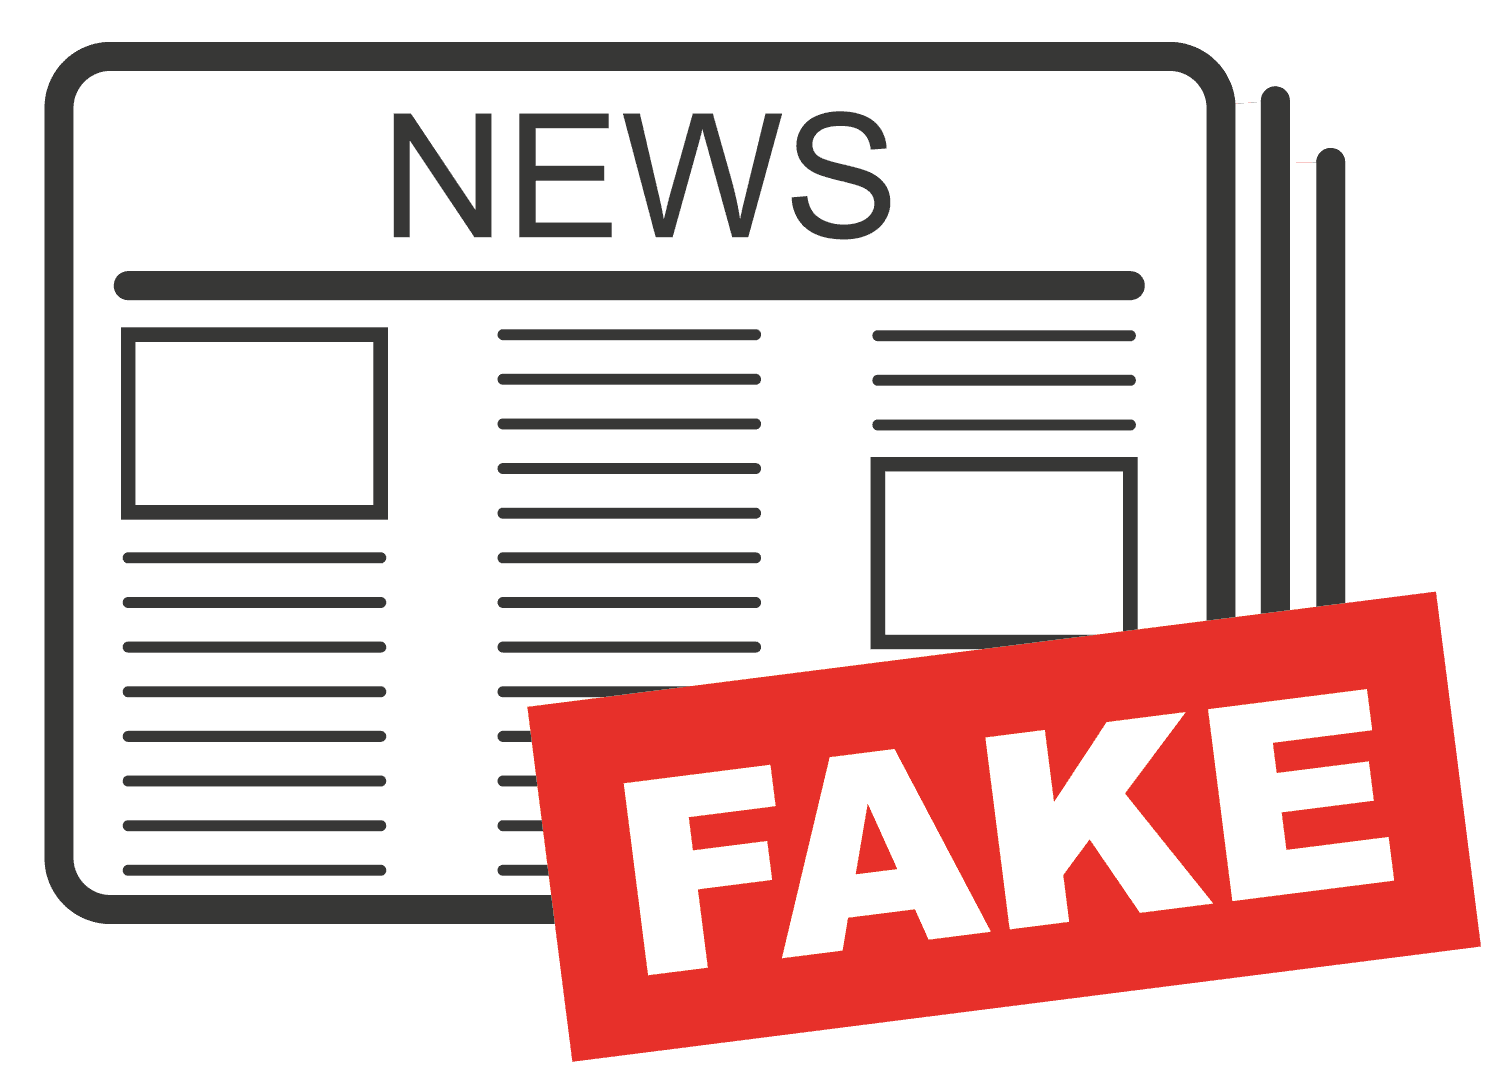 Fake-News dargestellt als Zeitschrifft mit Kennzeichen